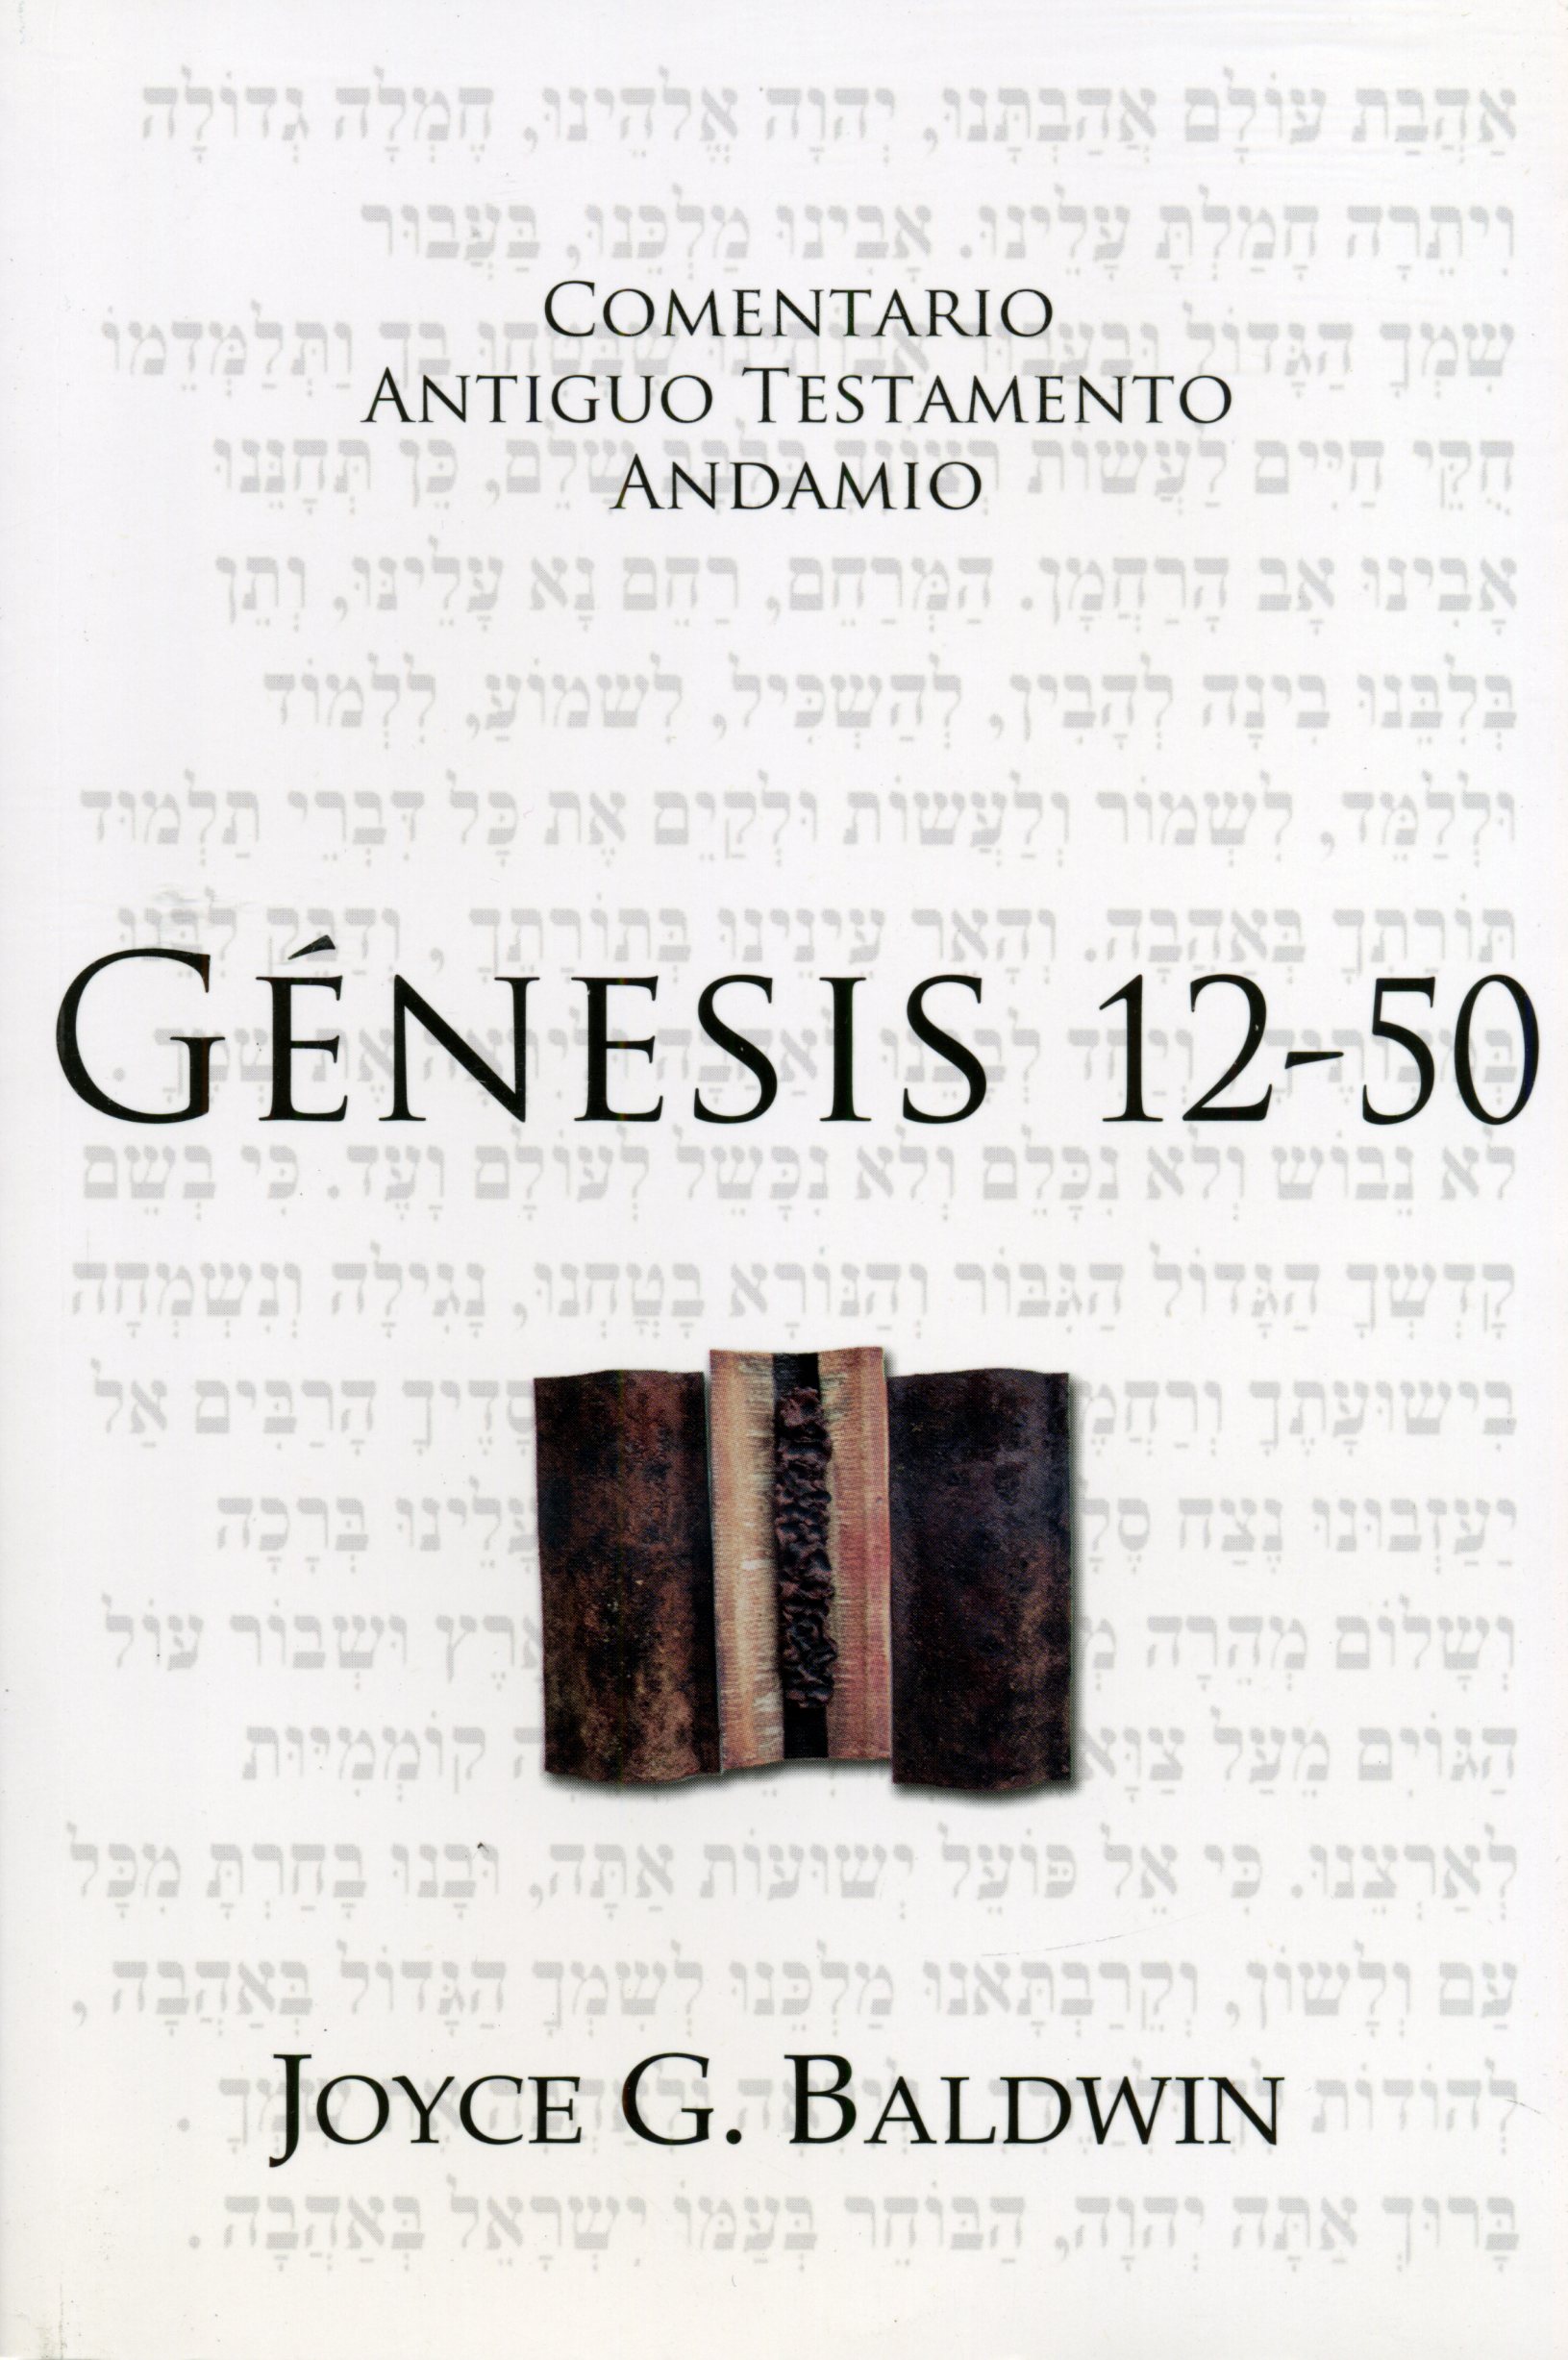 Comentario Génesis 12-50